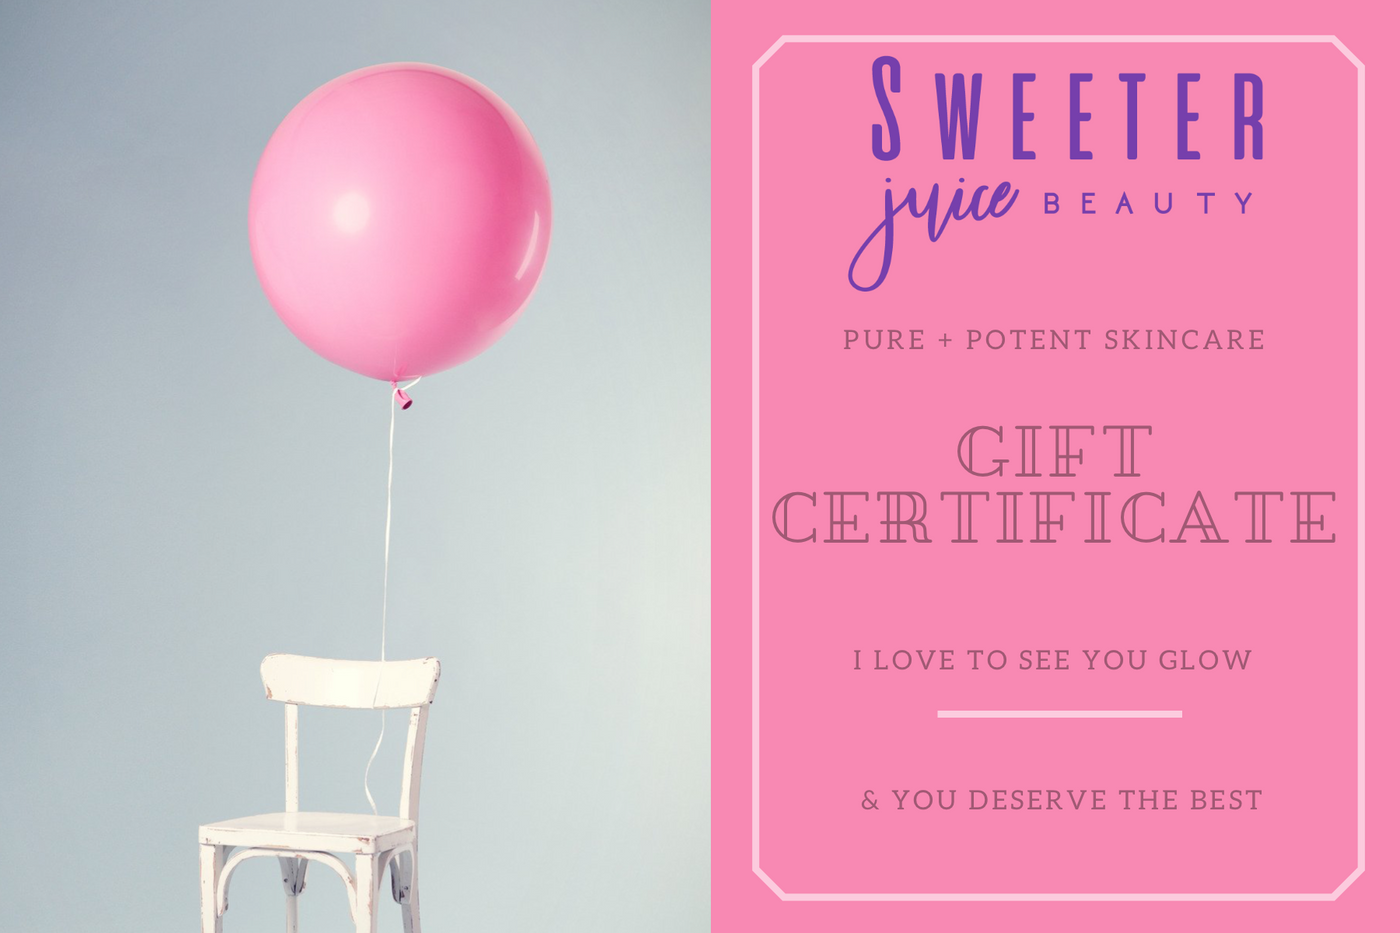 Sweeter Juice Beauty Gift Card - Sweeter Juice Beauty